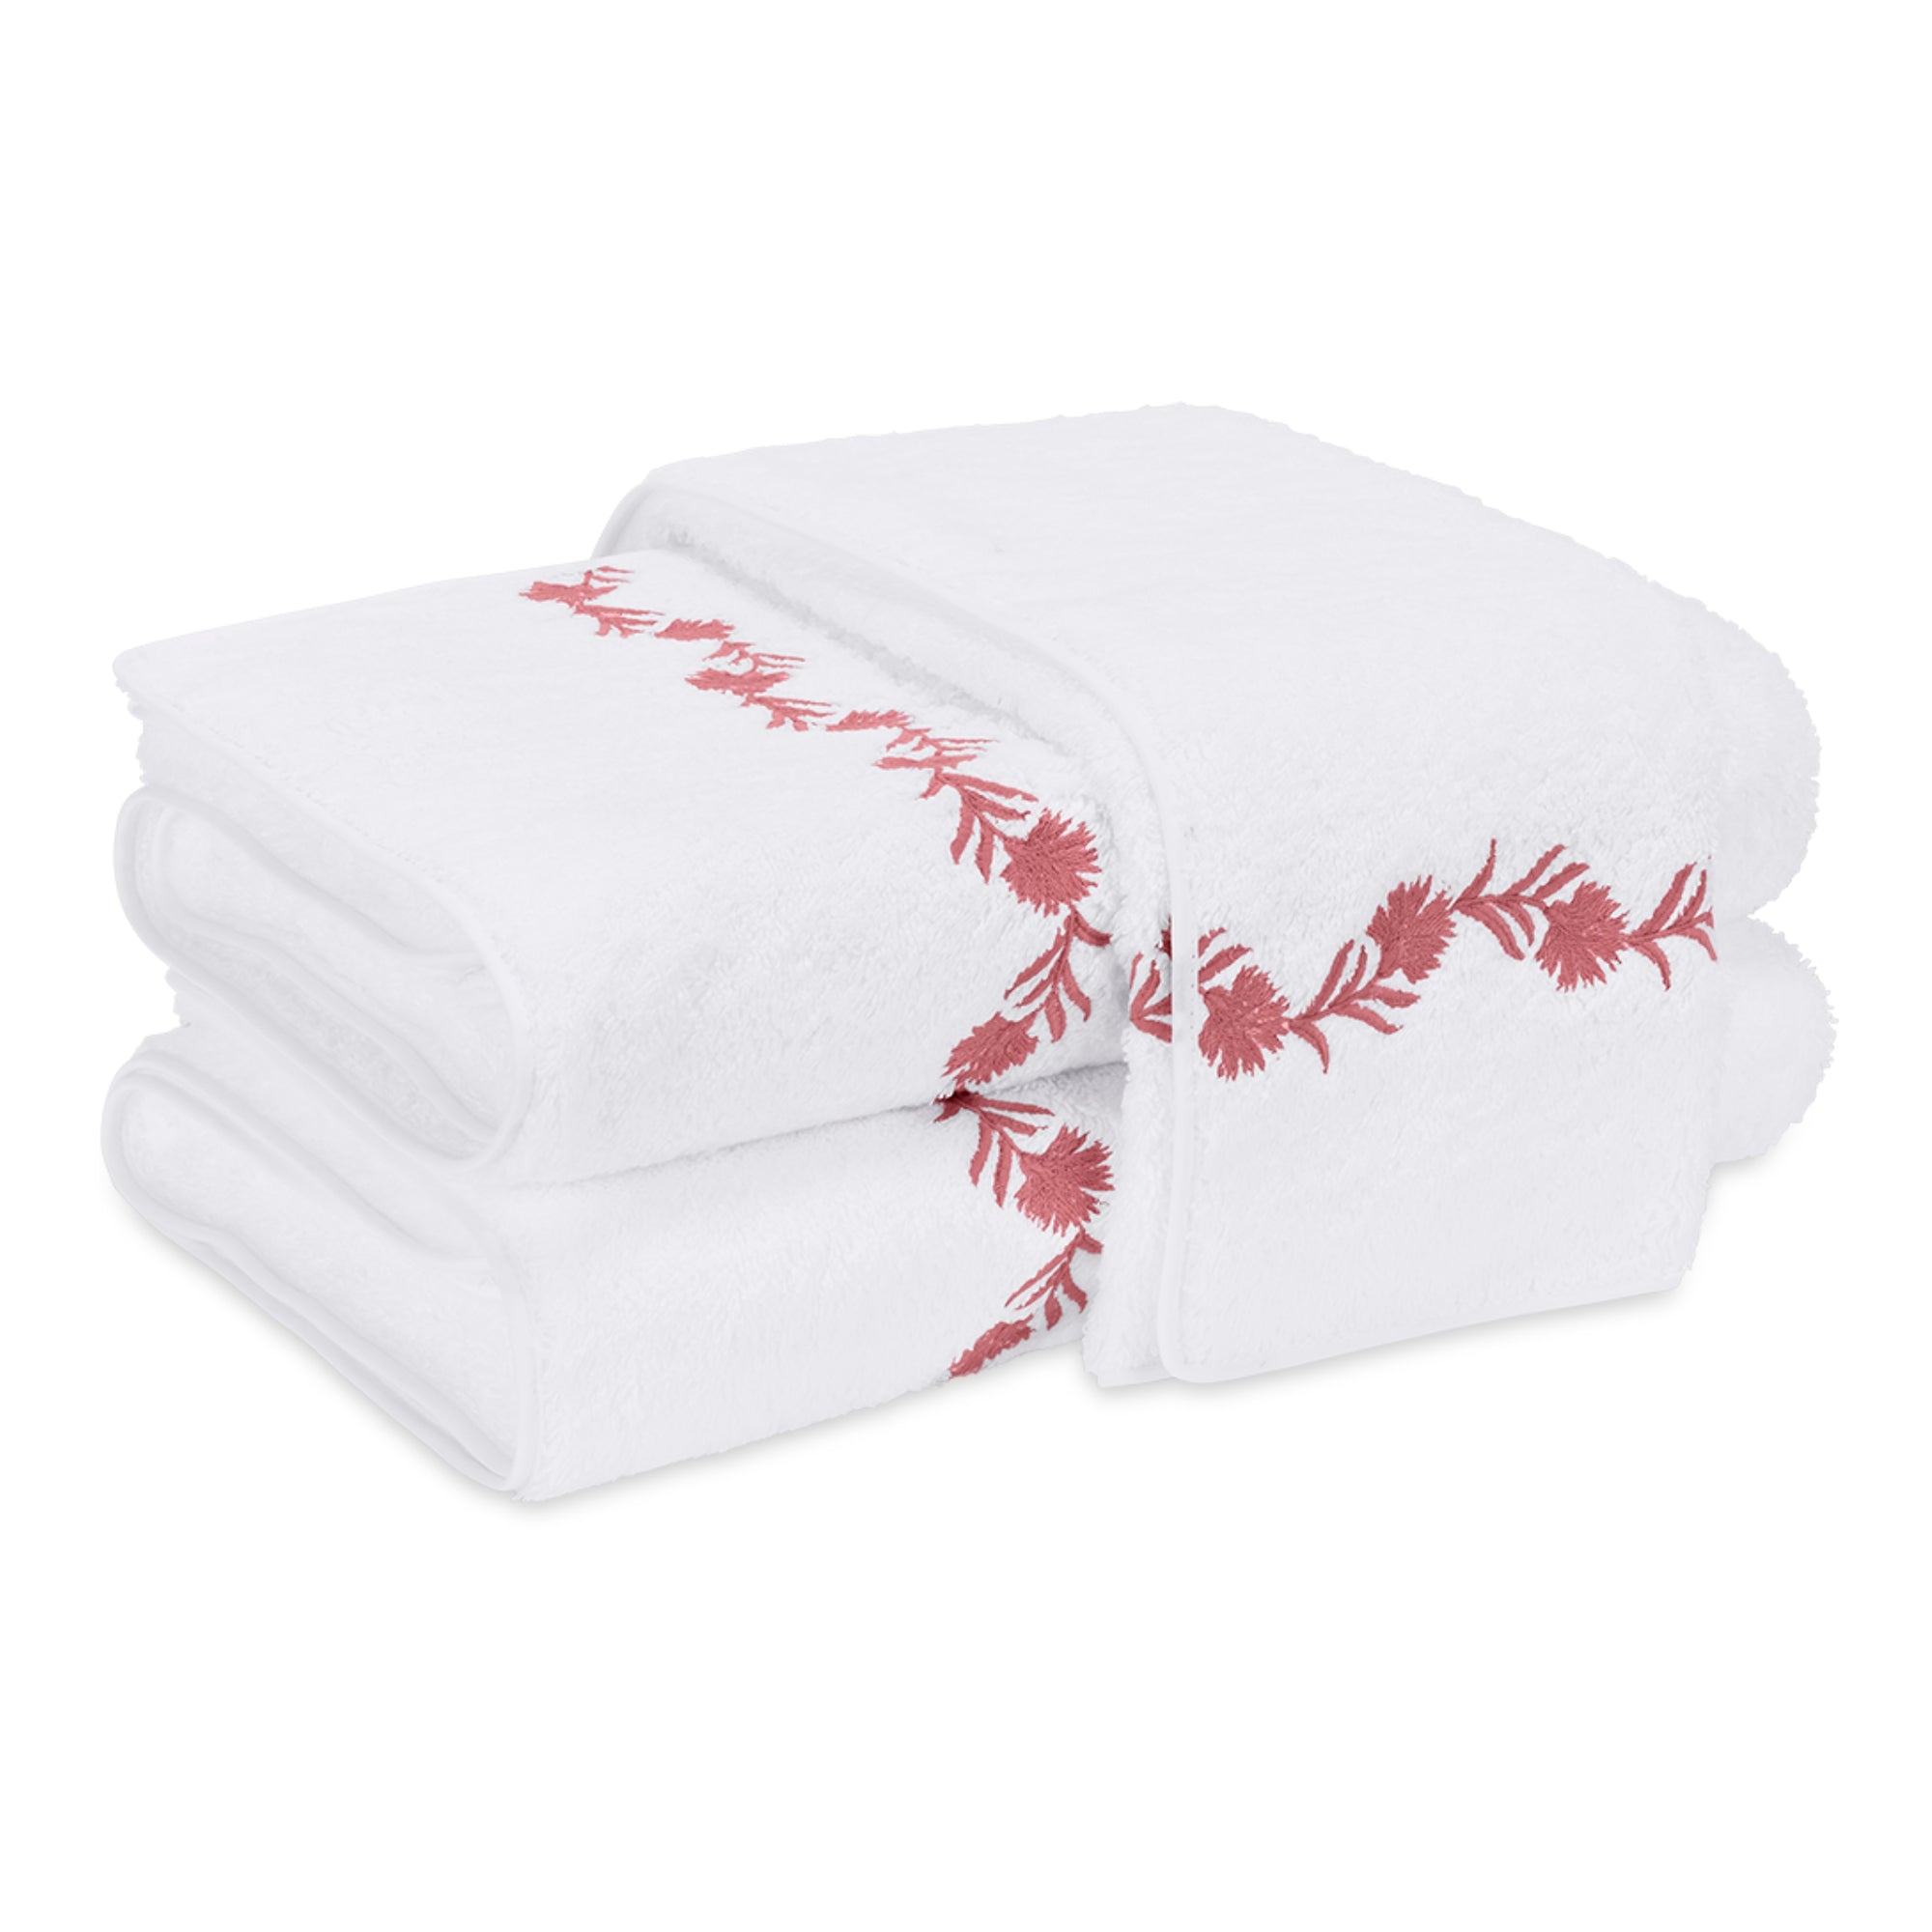 Matouk Daphne Bath Towels Pink Coral Fine Linen